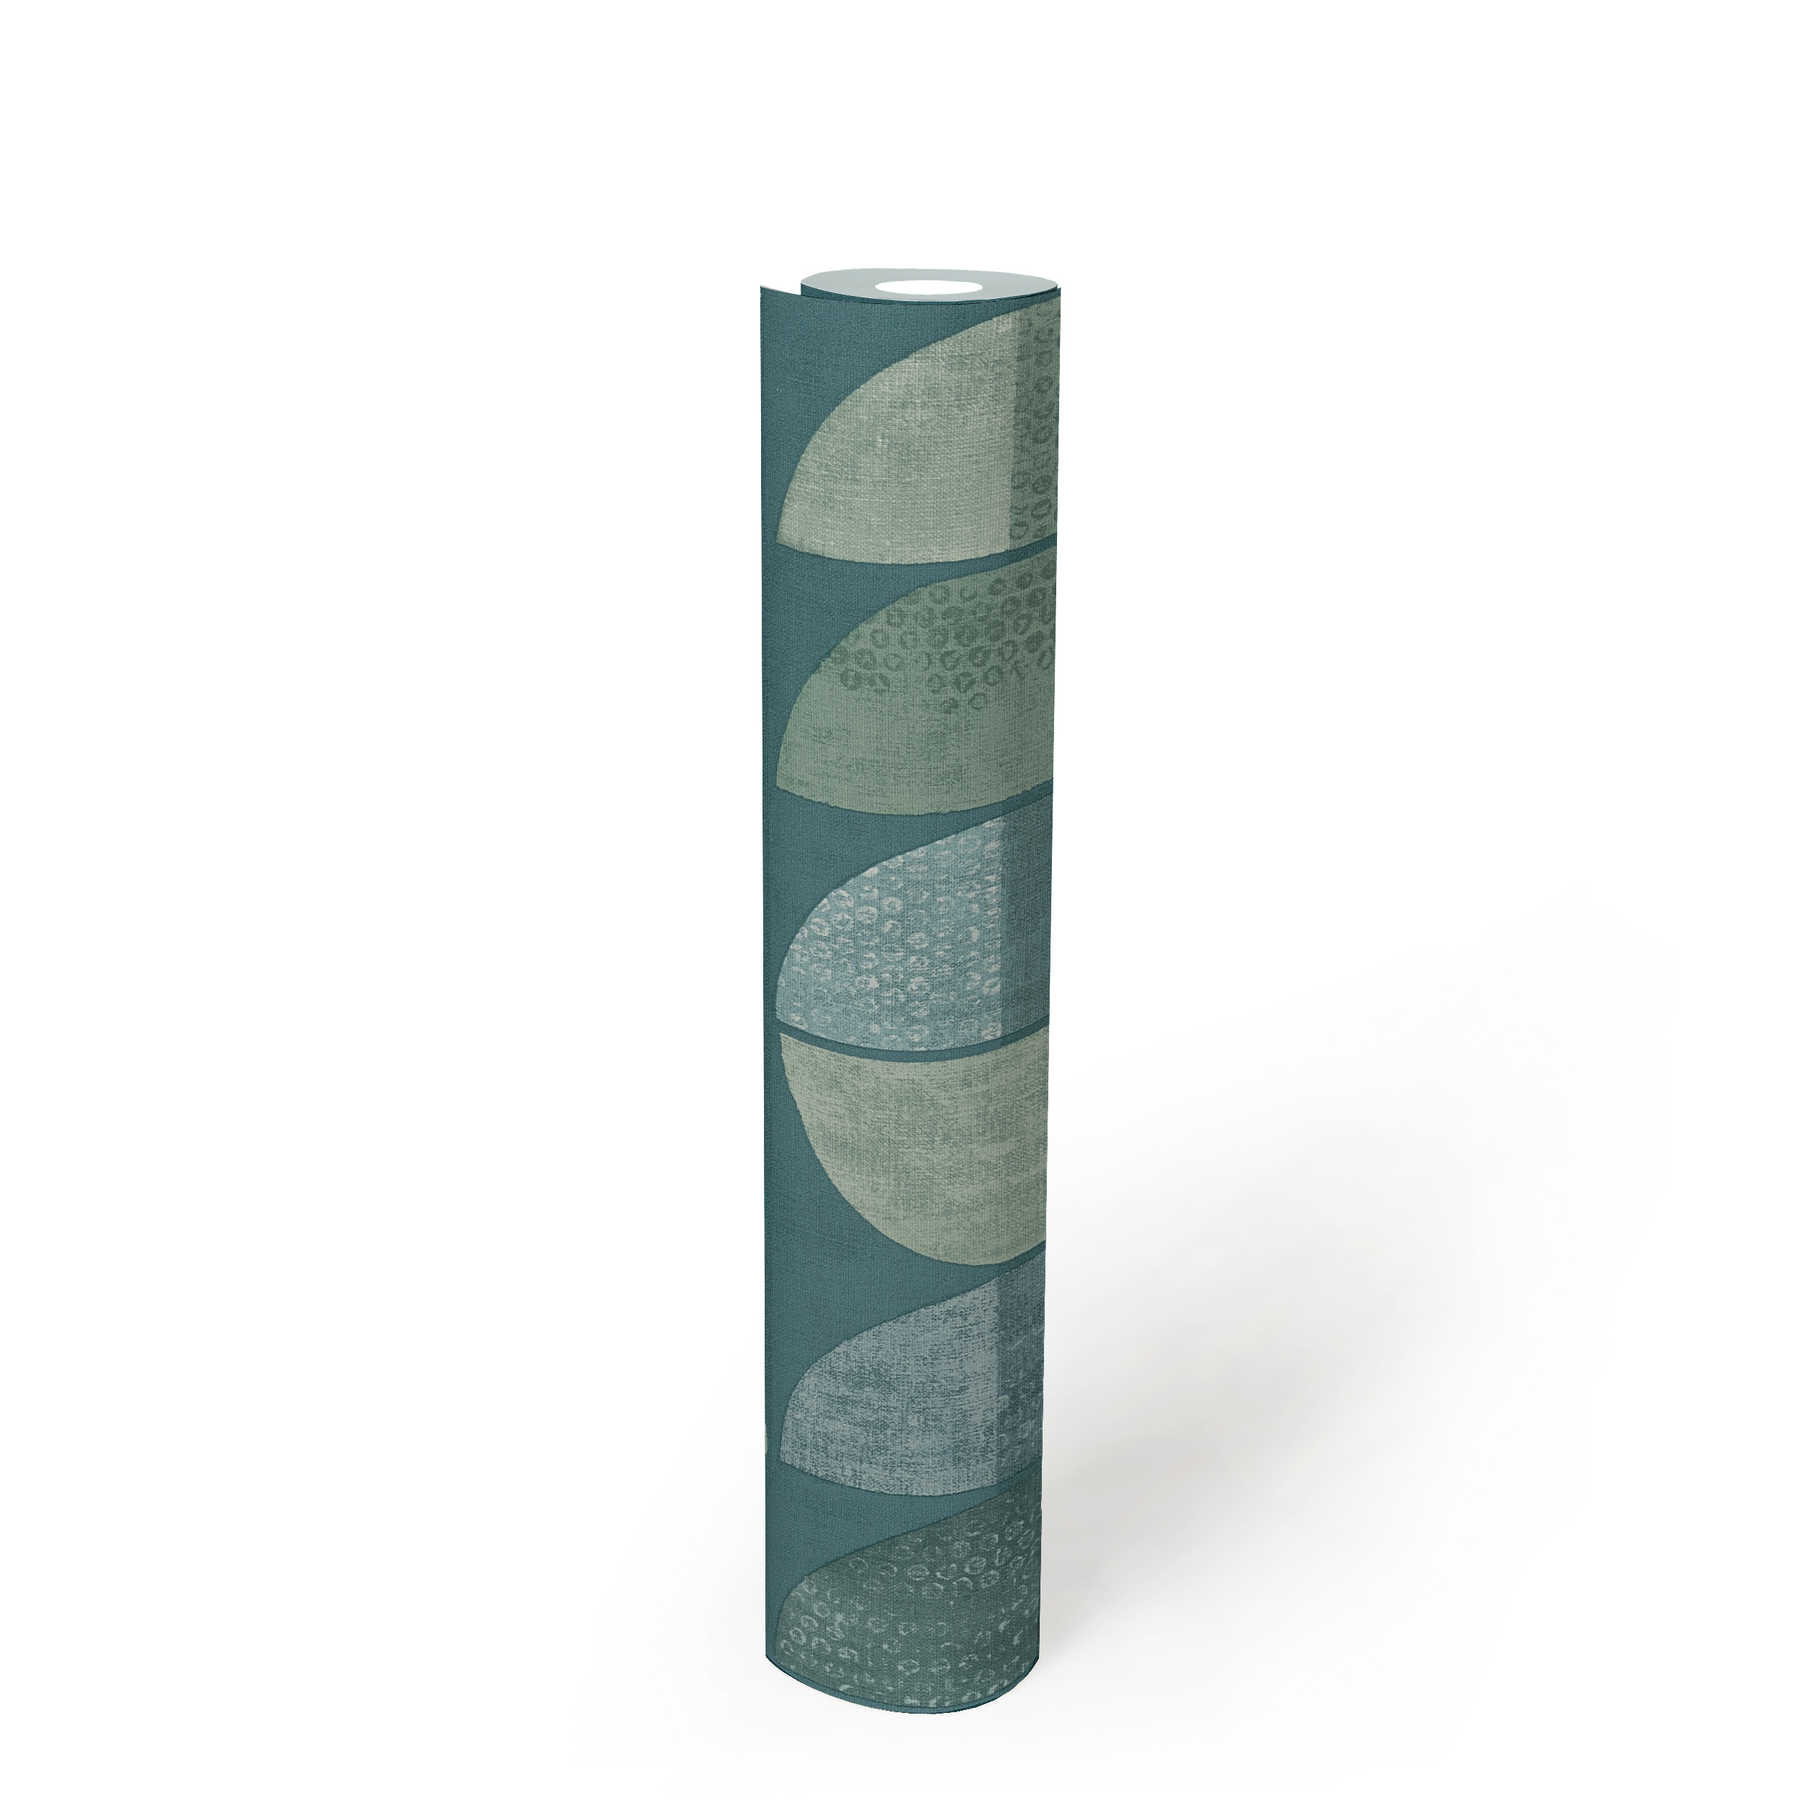             Papier peint motif géométrique rétro, style scandinave - bleu, vert
        